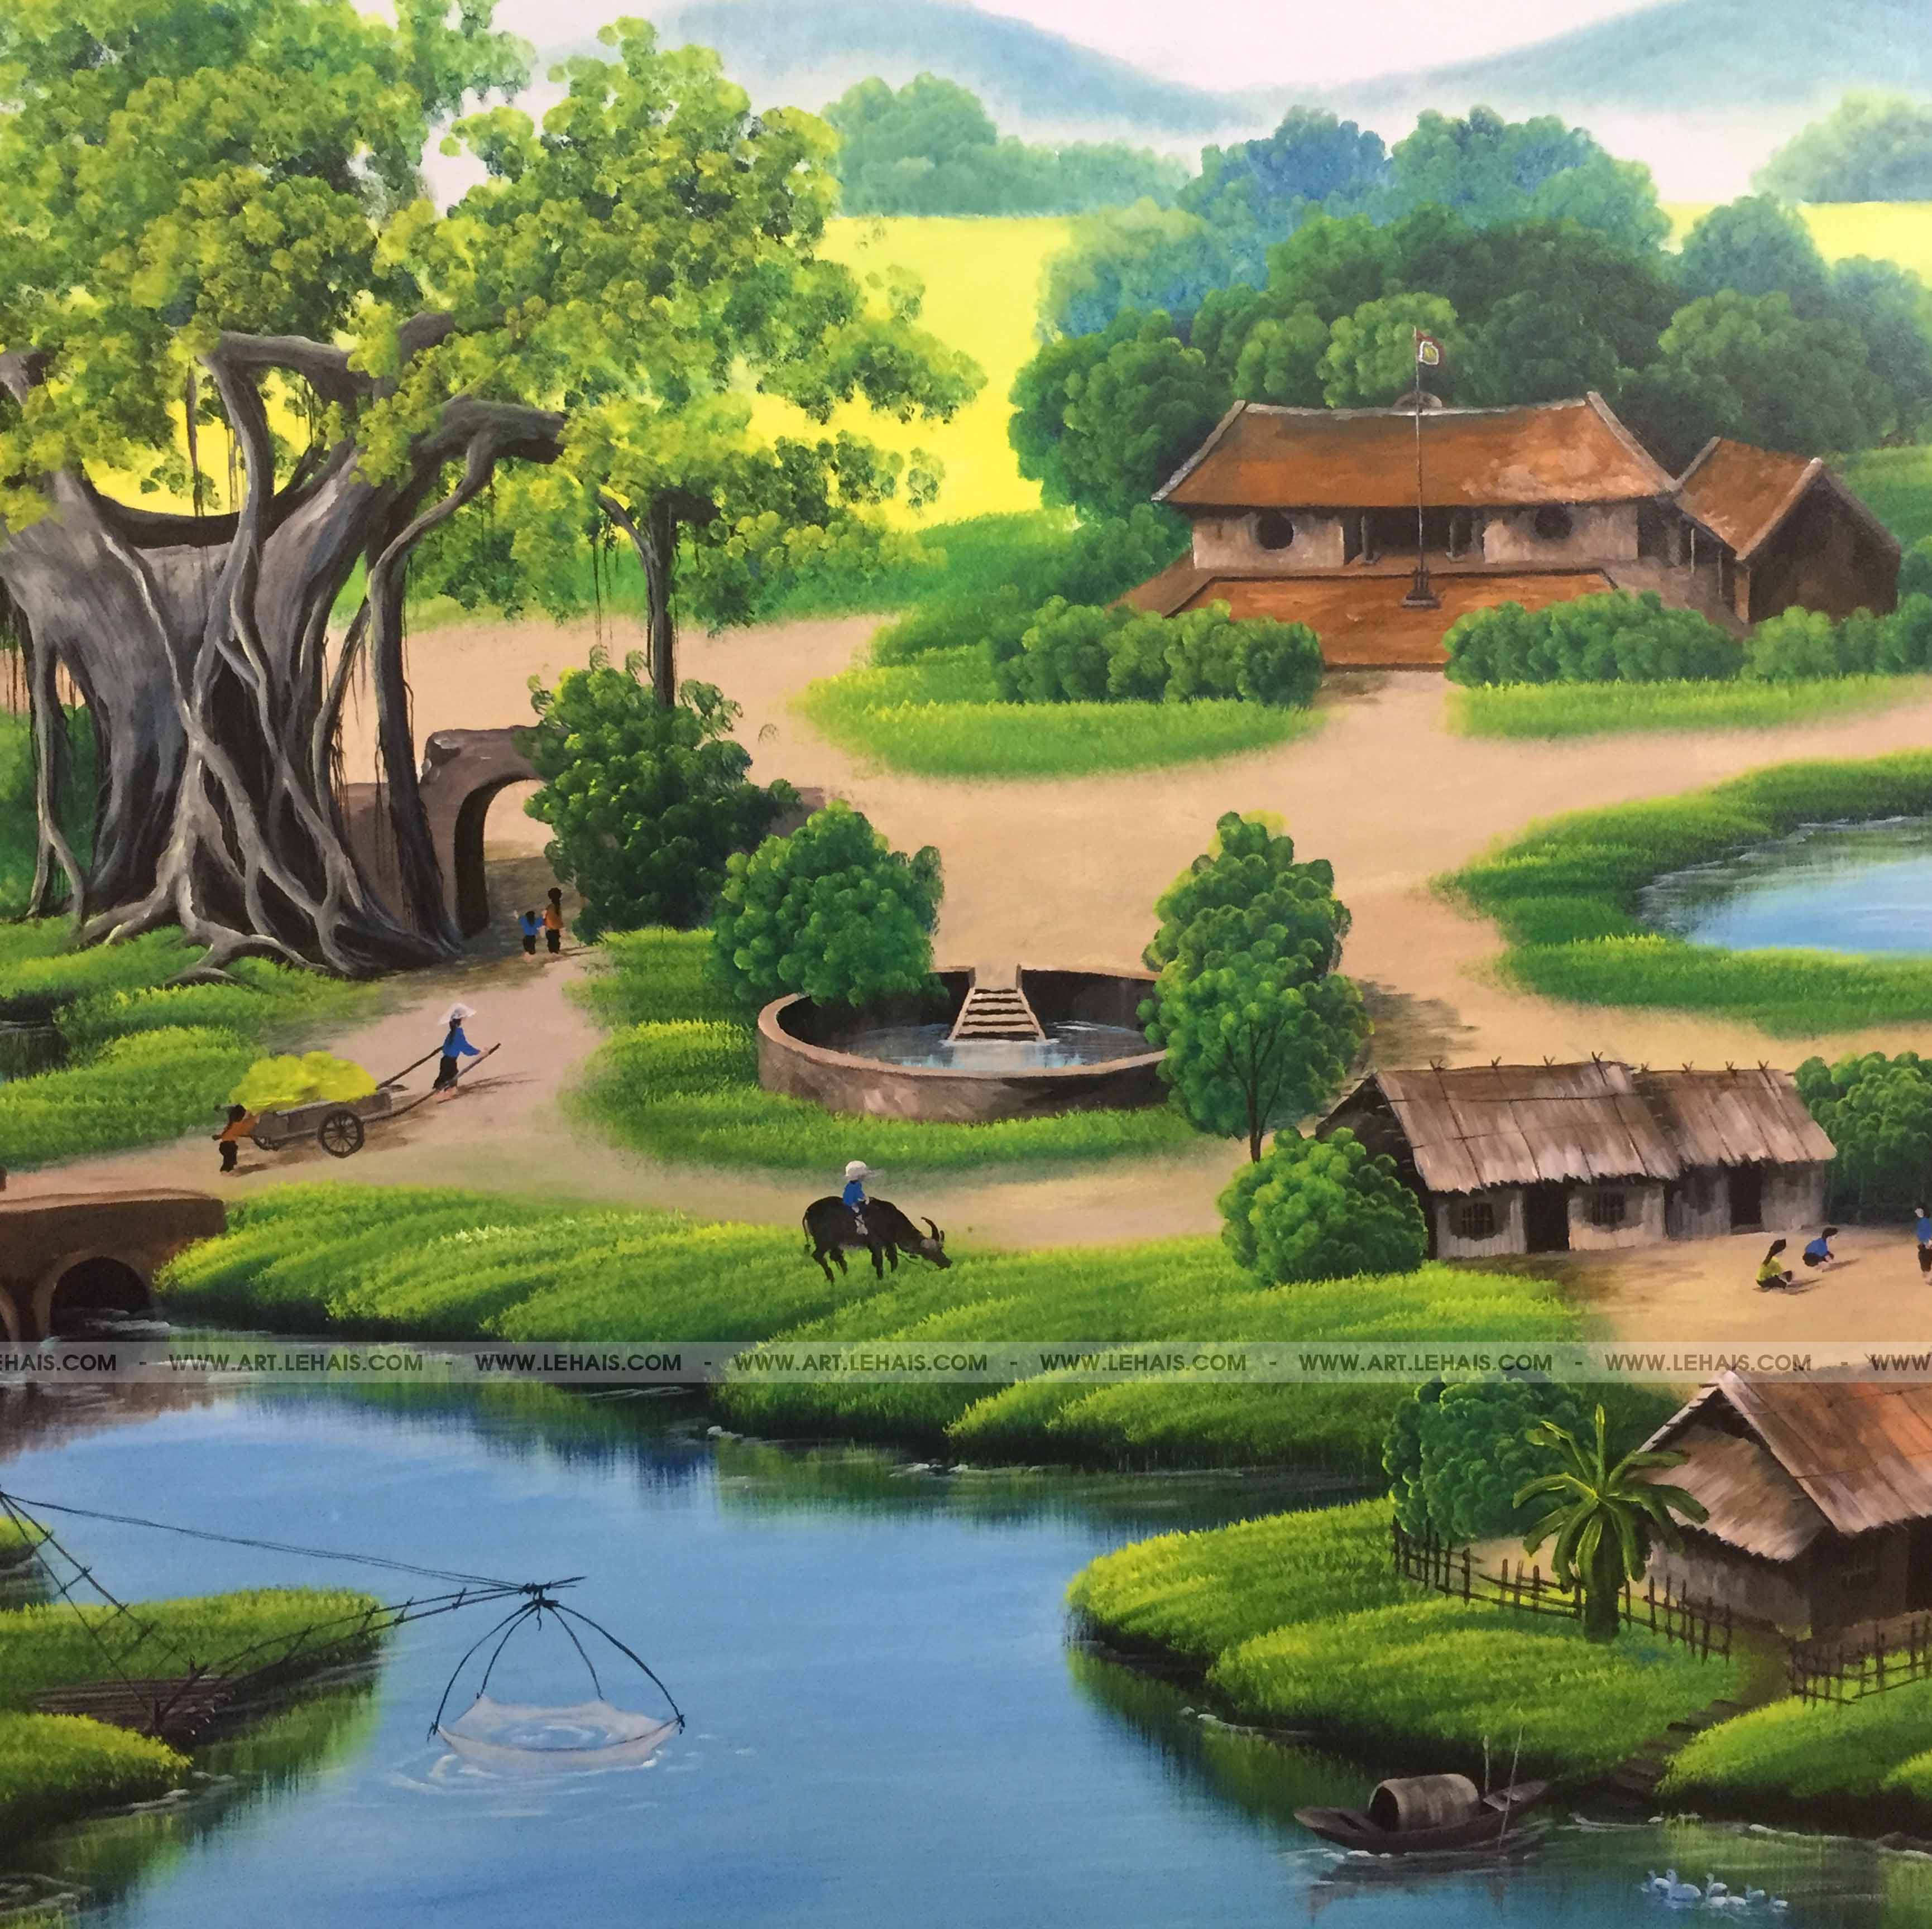 Vẽ tranh tường 3D cảnh đồng quê tại gia đình ở Sơn Tây, Hà Nội - TT173LHAR  - LEHAIS ART - TRANH NGHỆ THUẬT CAO CẤP